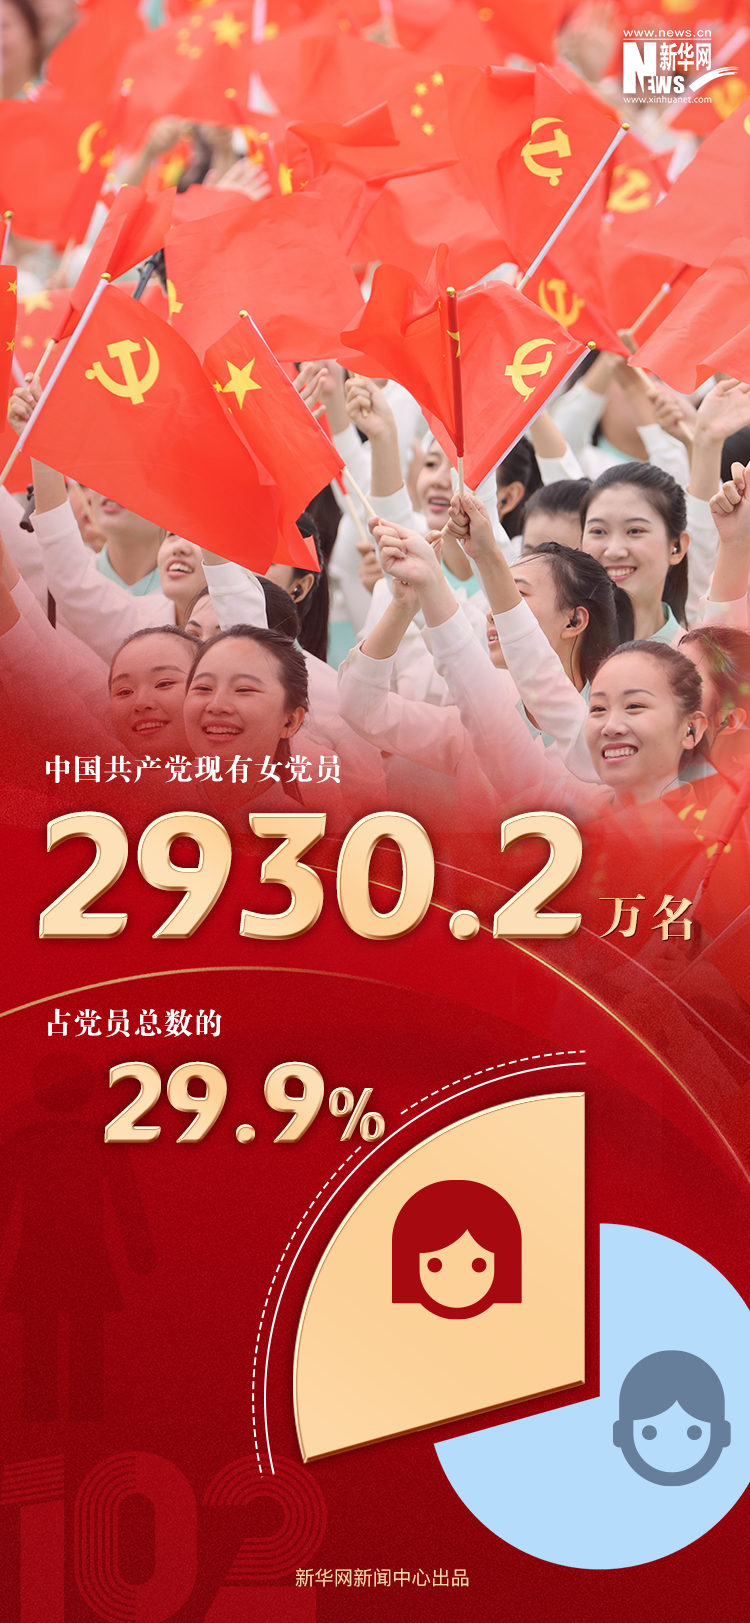 9804.1万名！数读最新中国共产党党内统计公报